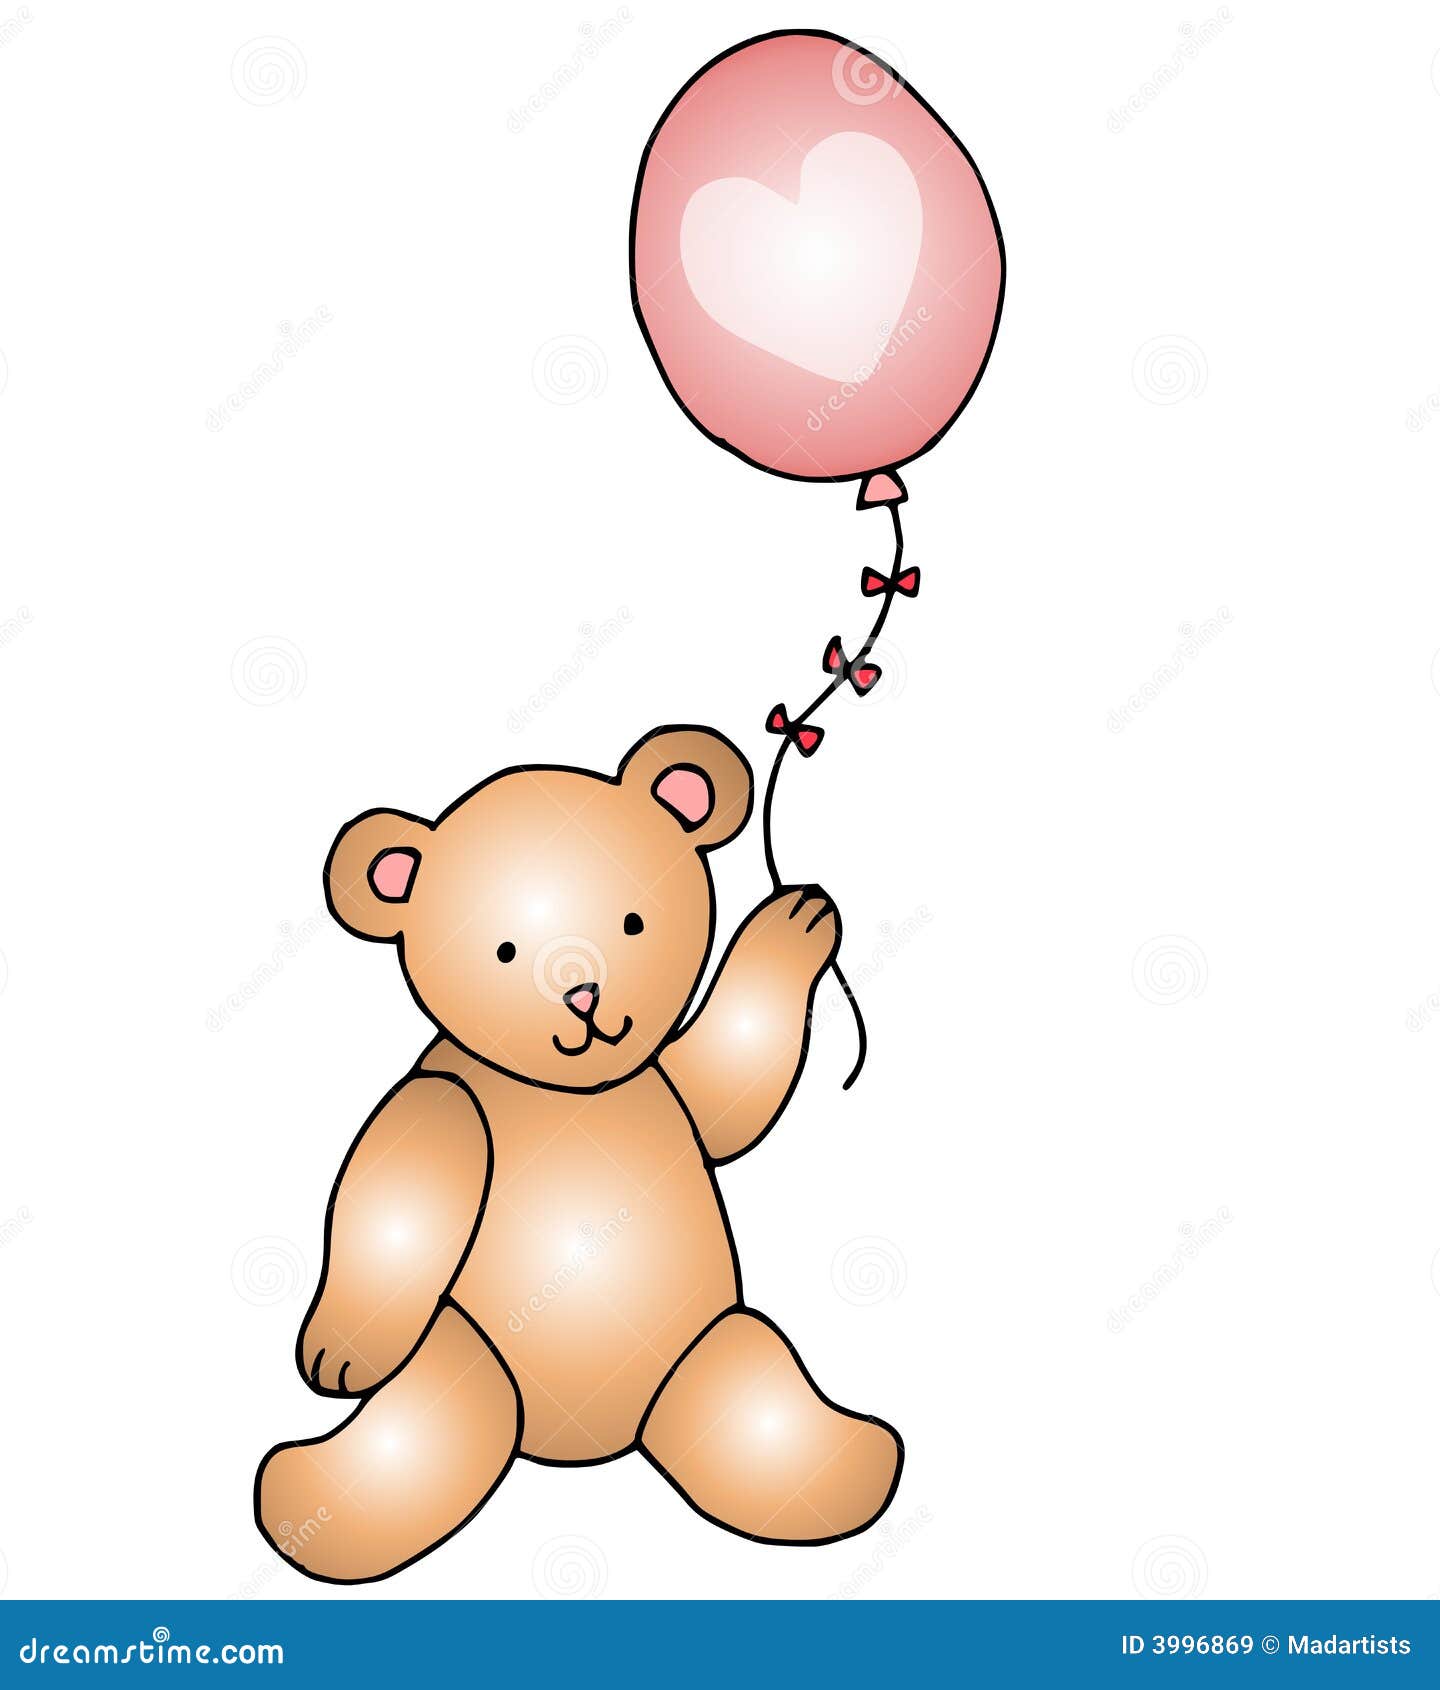 teddy bear holding balloons clipart - photo #5